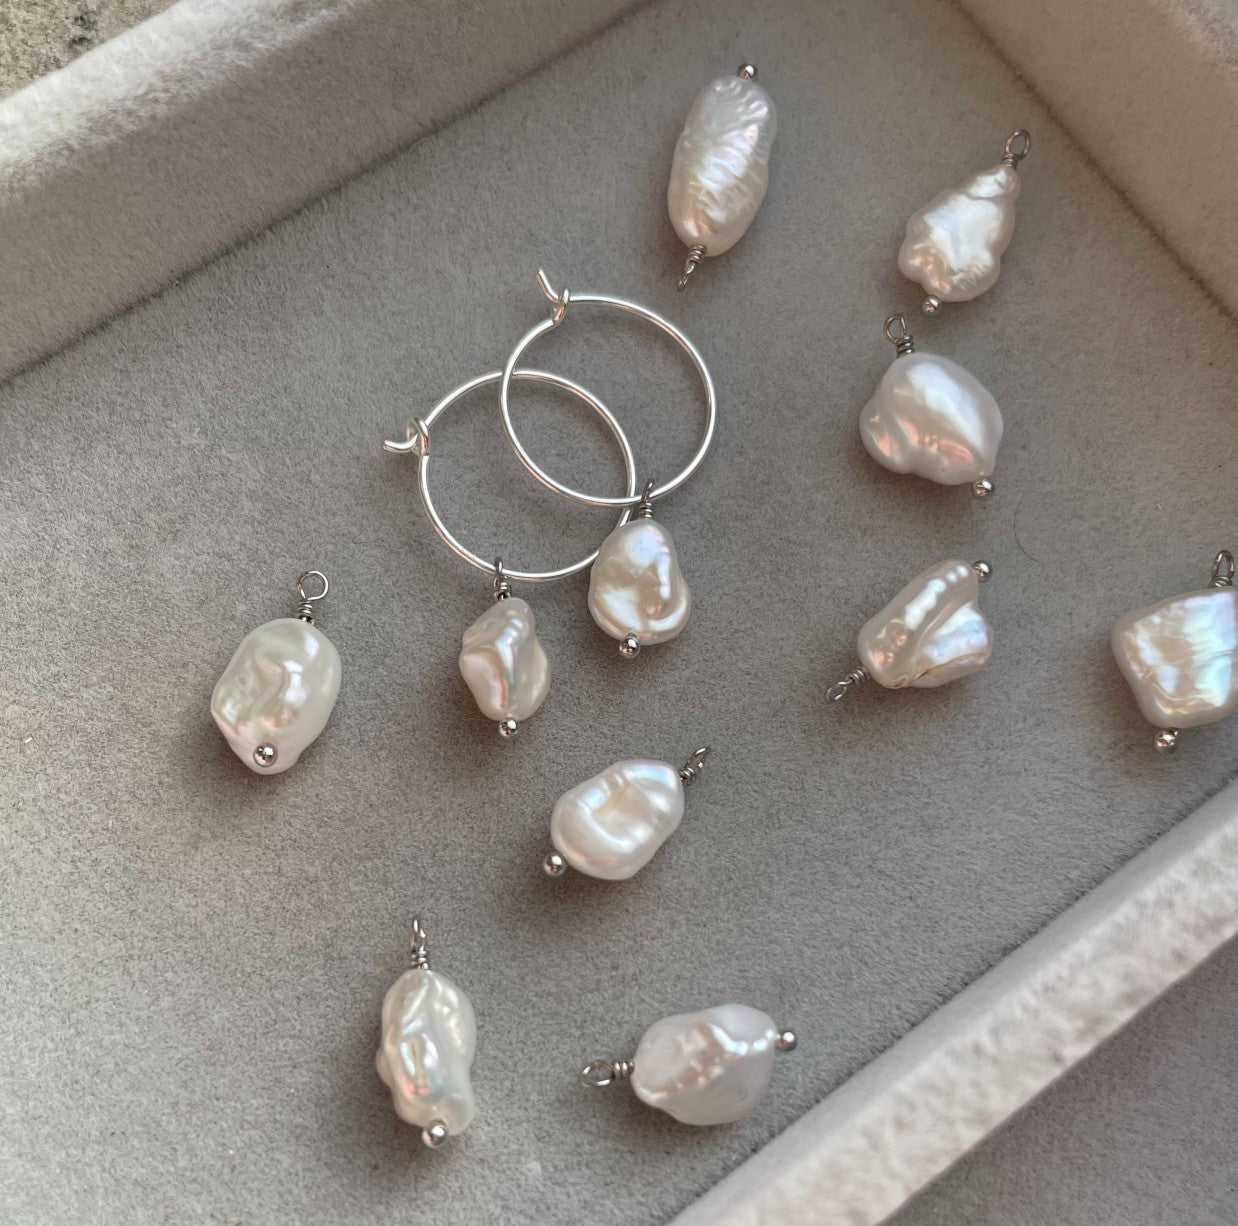 Pearl Hoop Earrings | Calm (Silver)